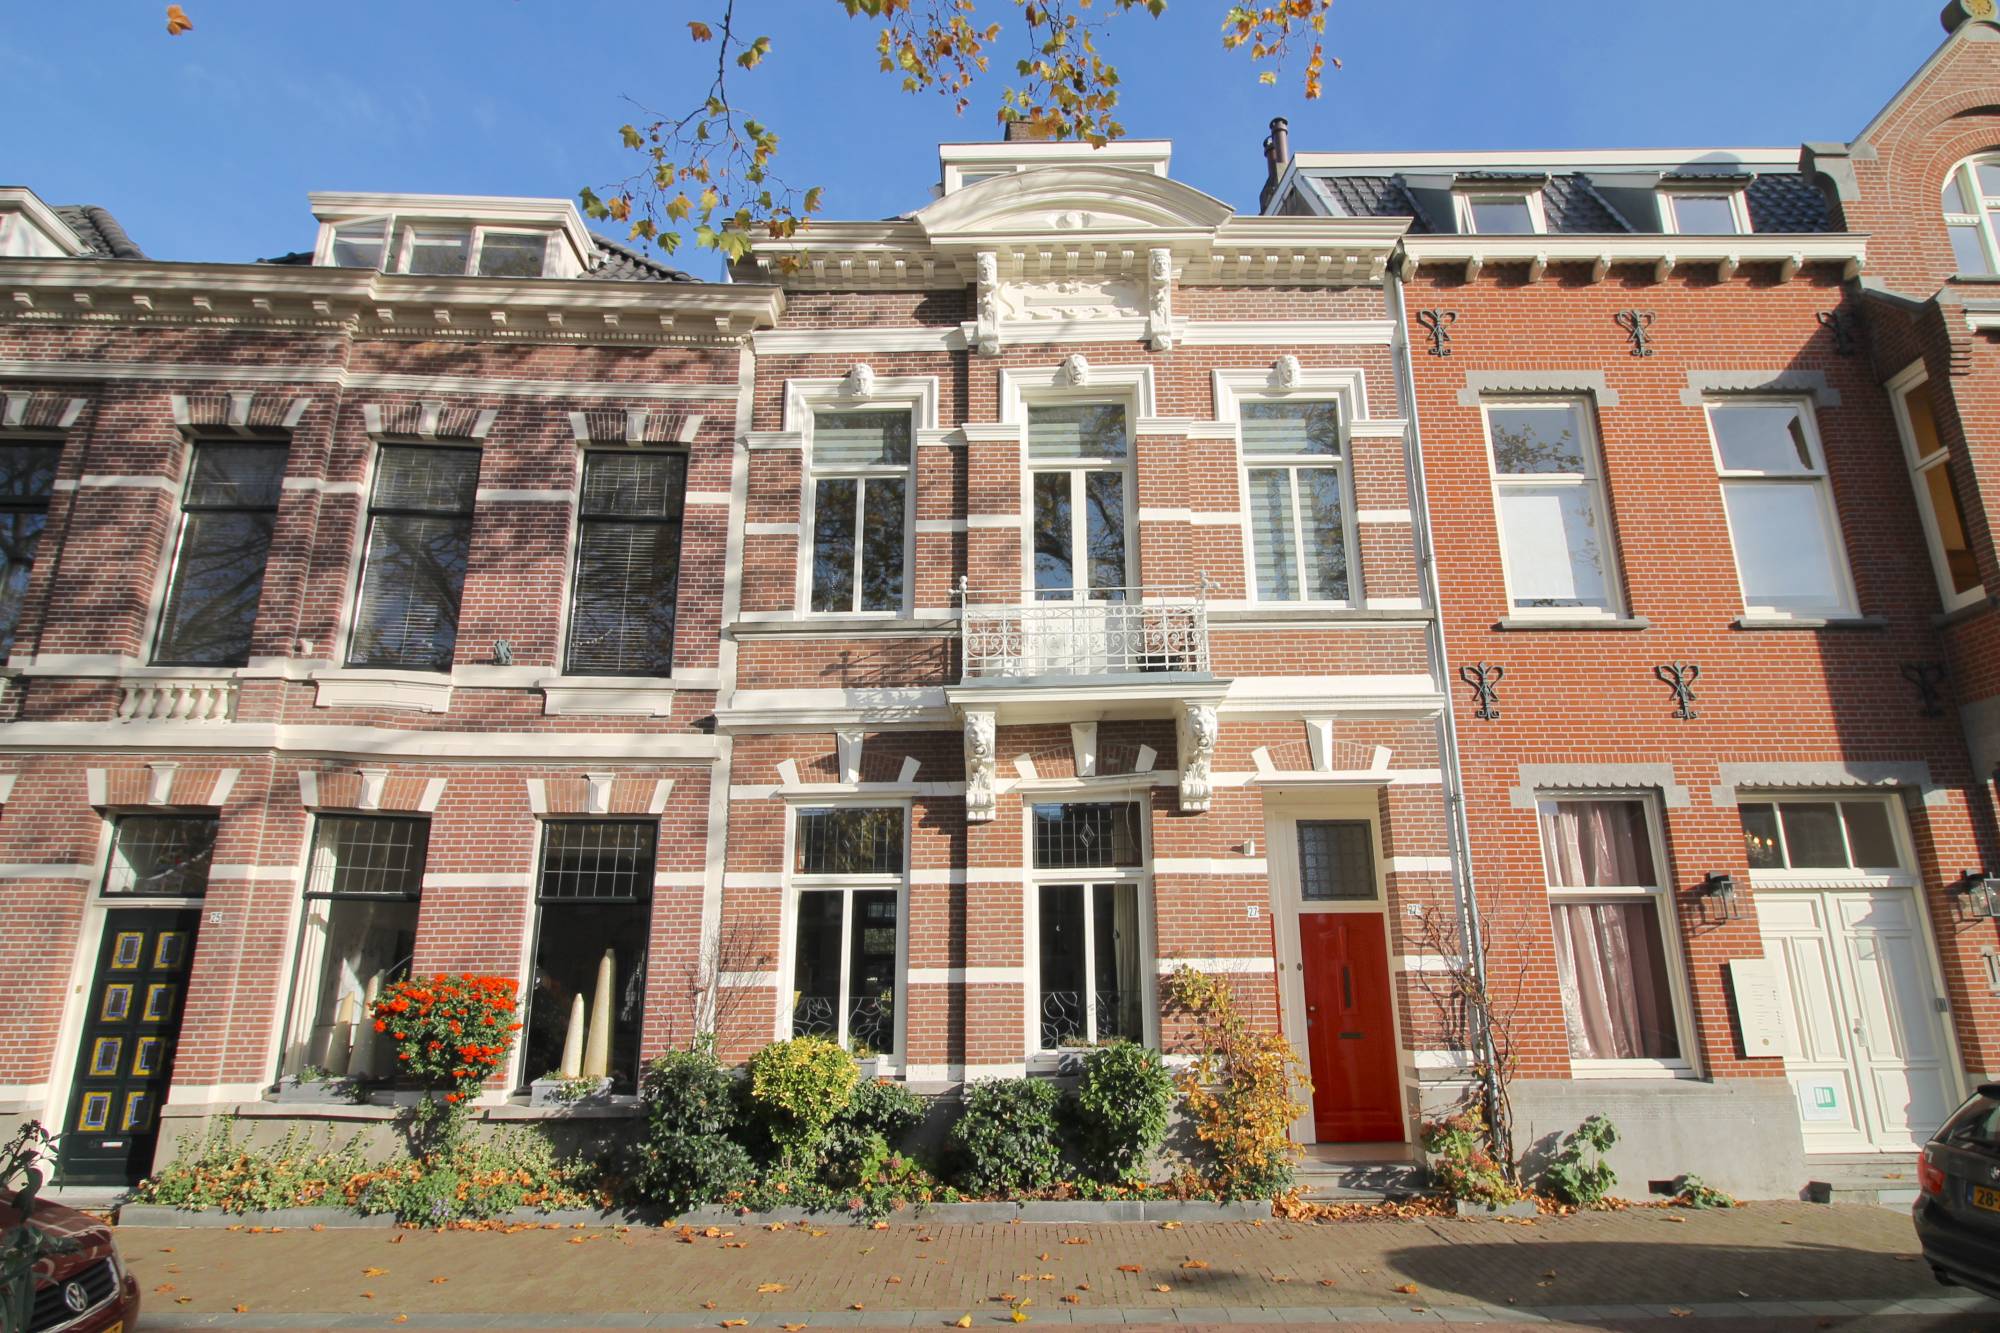 Bekijk foto 1/26 van apartment in Breda